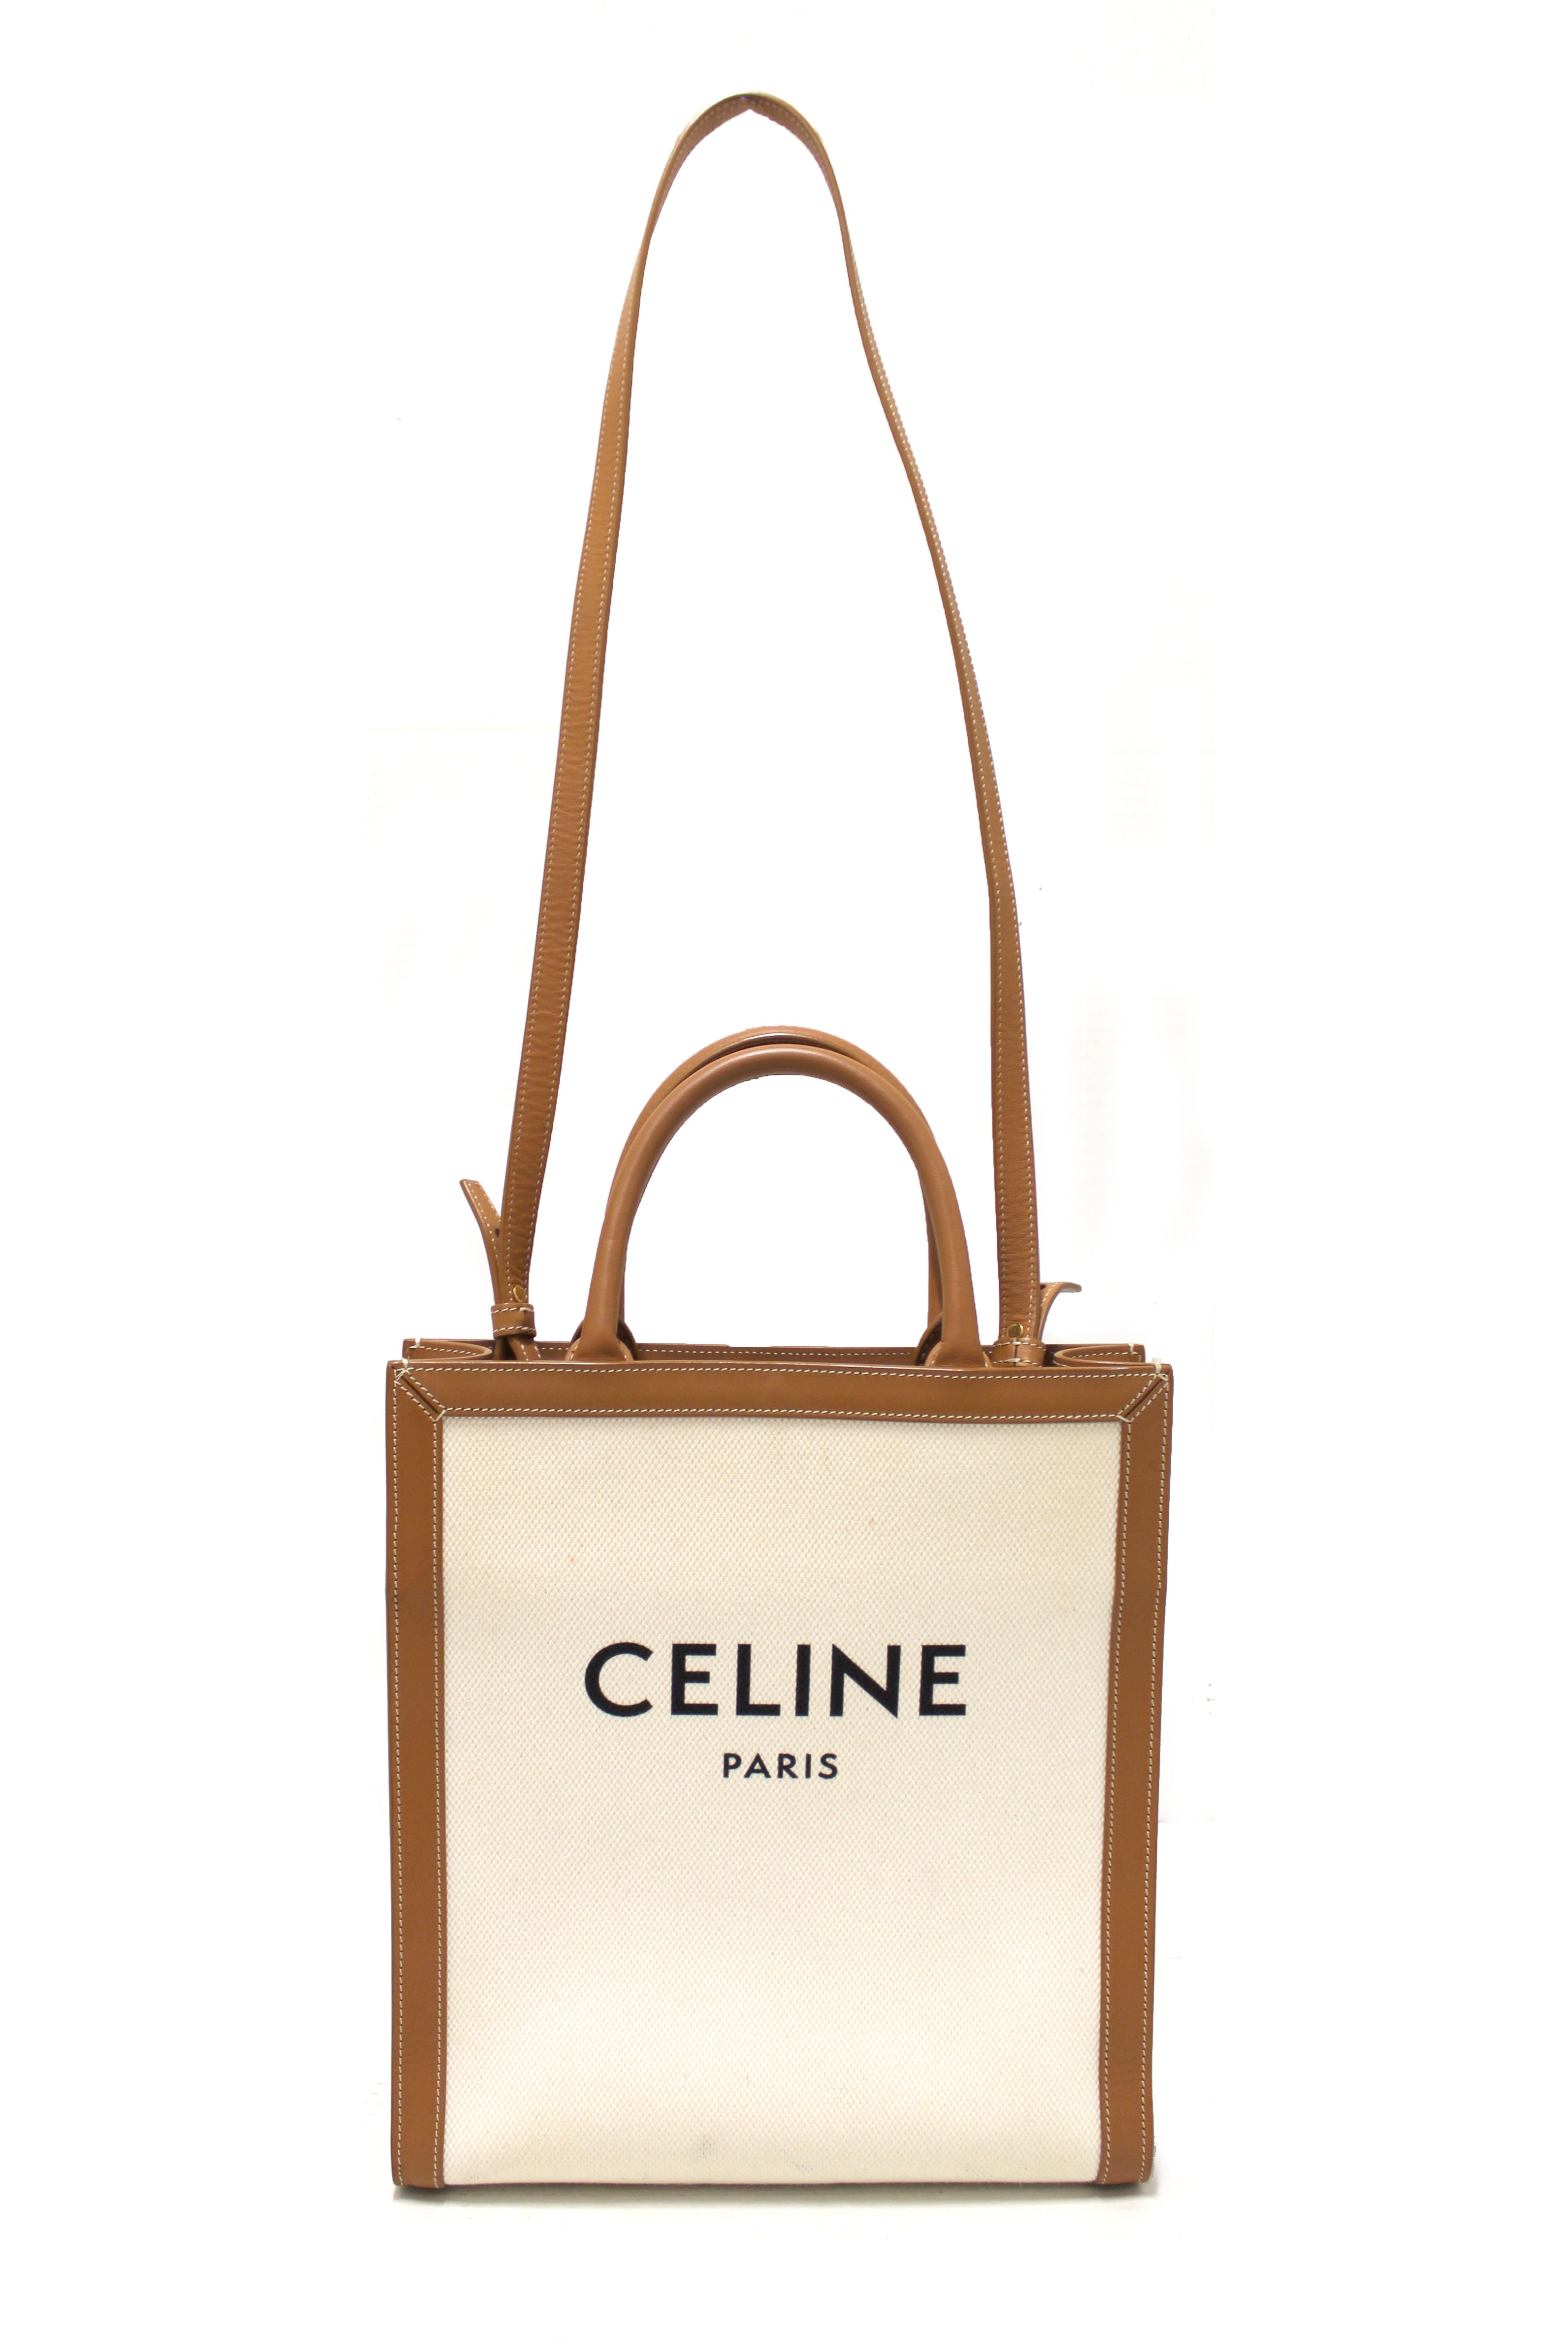 Authentic Celine Paris Canvas Bag